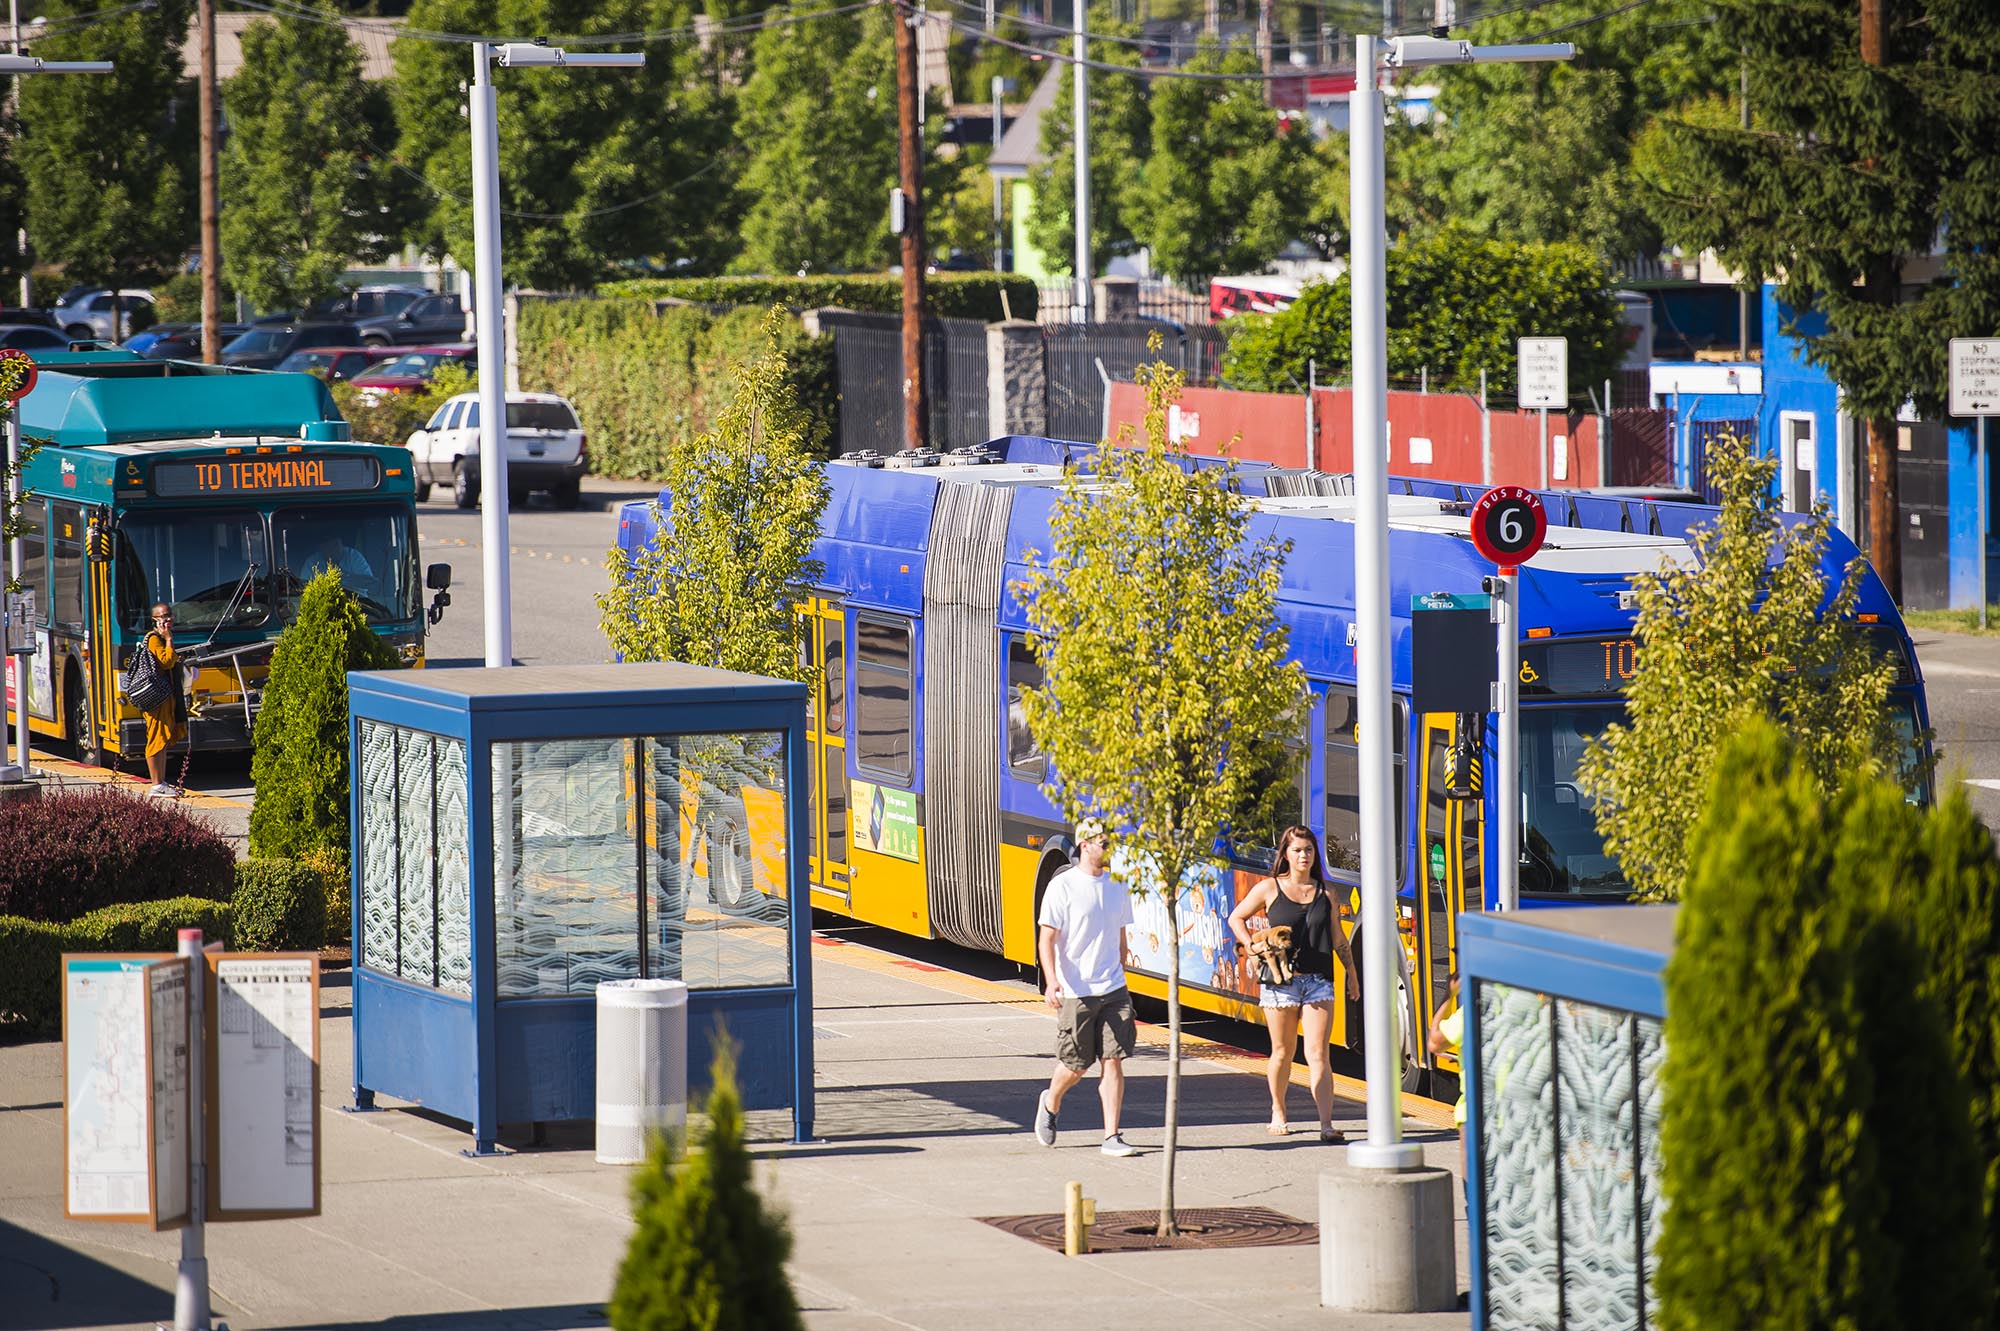 Buses at Kent Station Transit Center in Kent, Washington